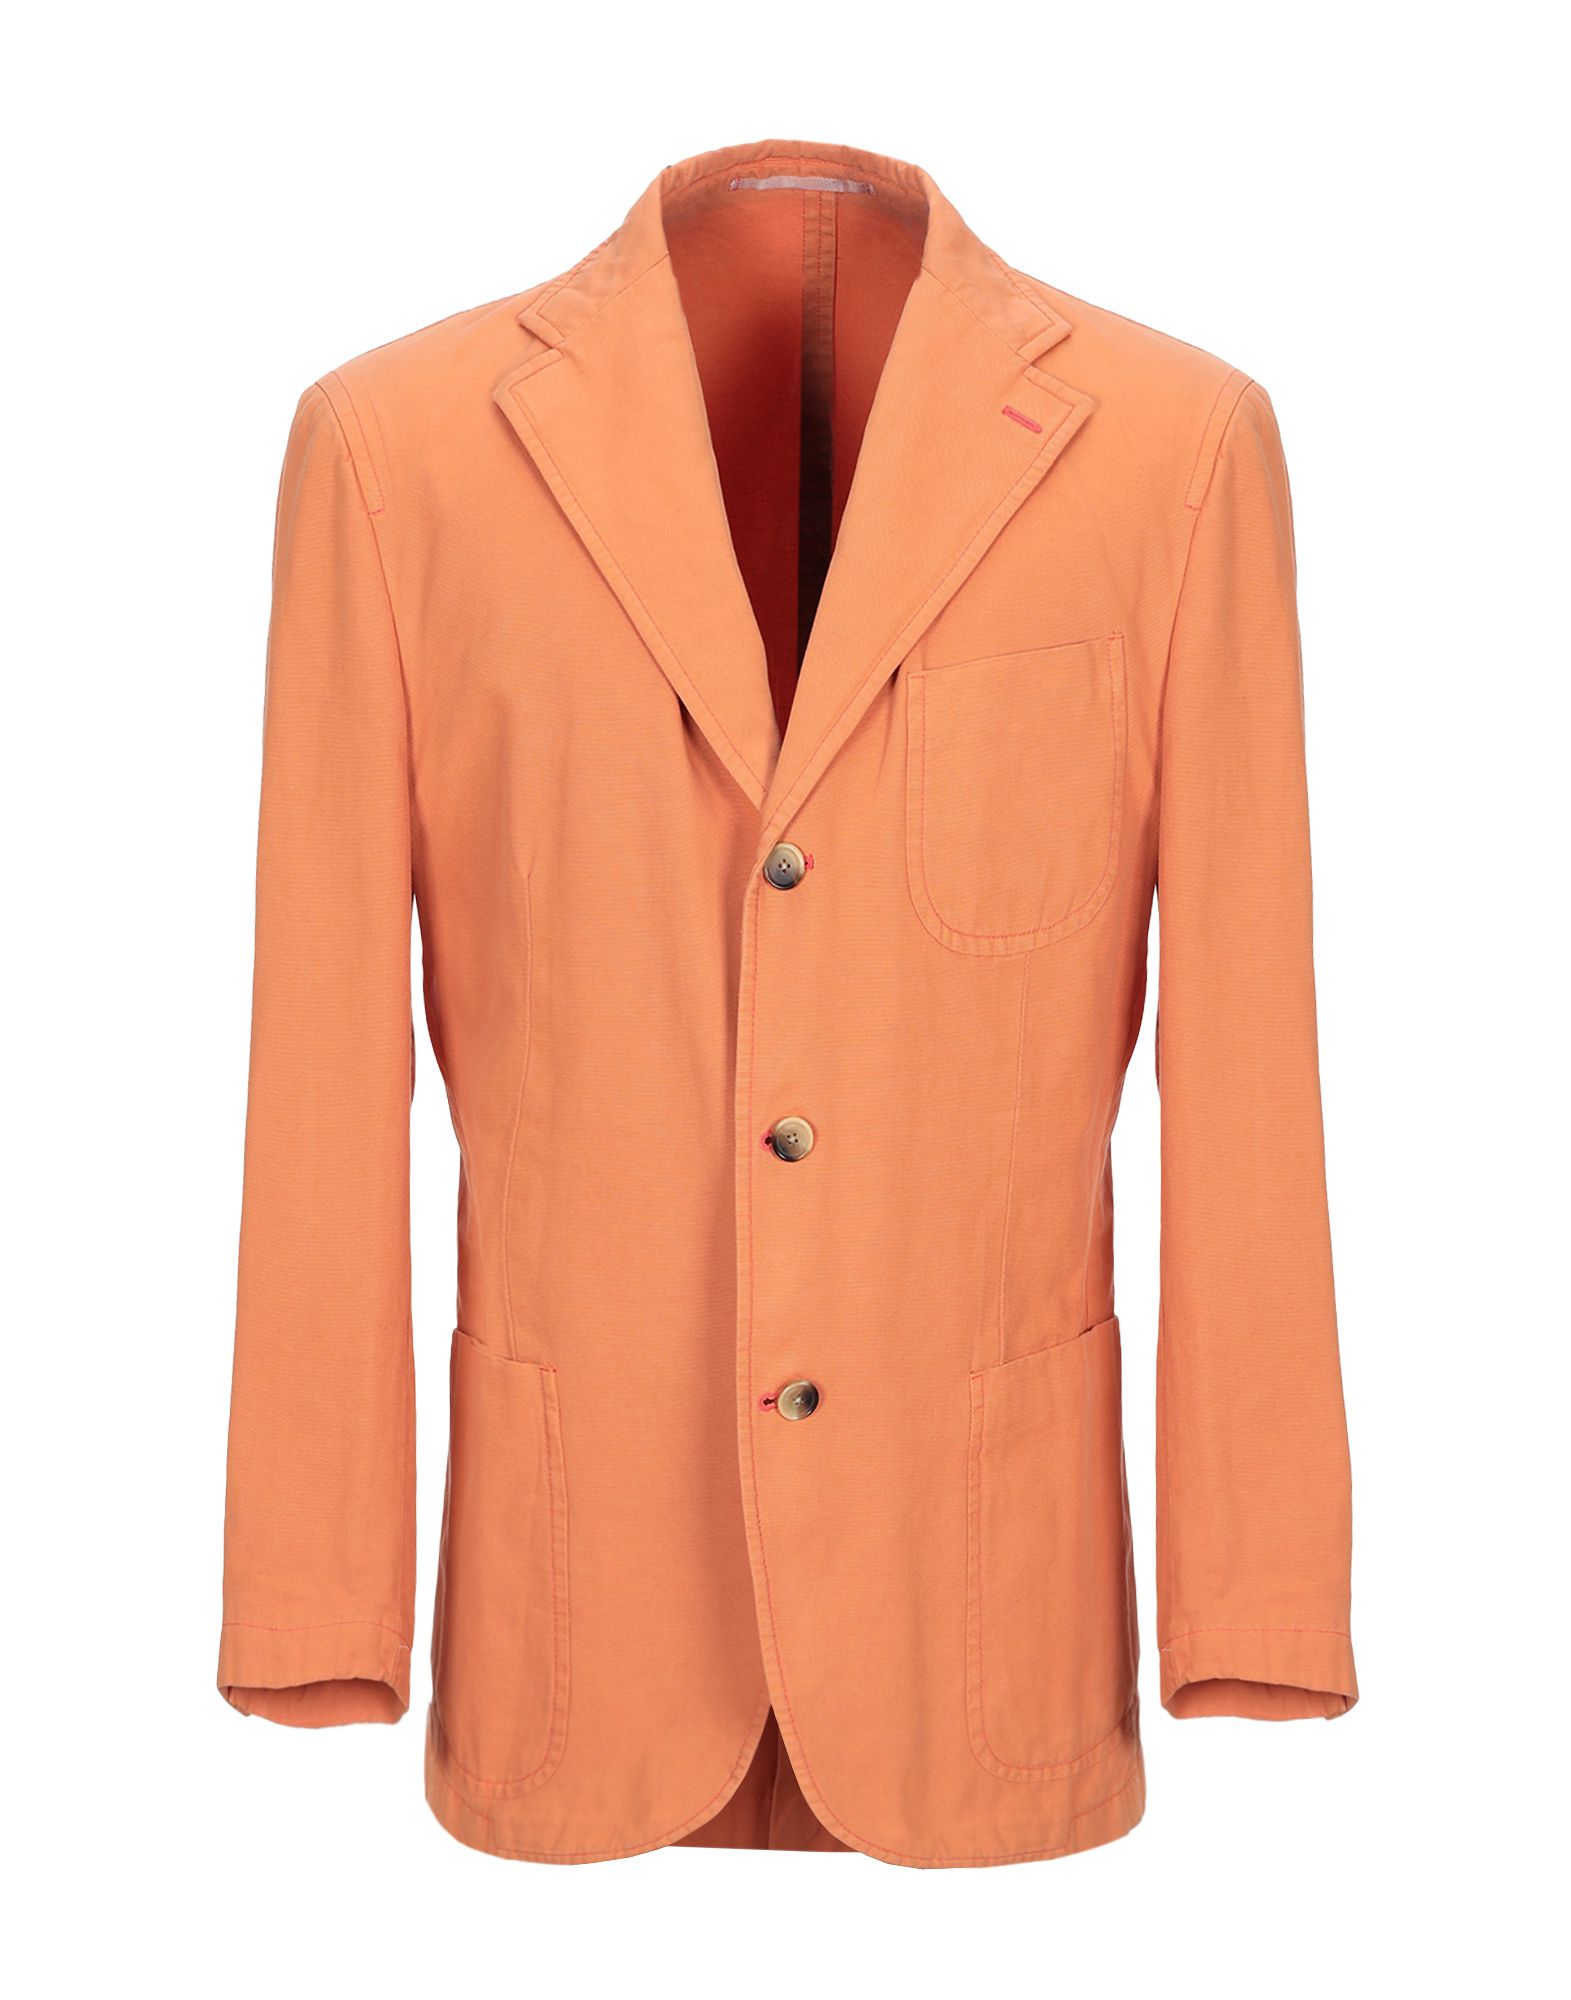 Raffaele Caruso Sartoria Parma Suit Jackets In Orange